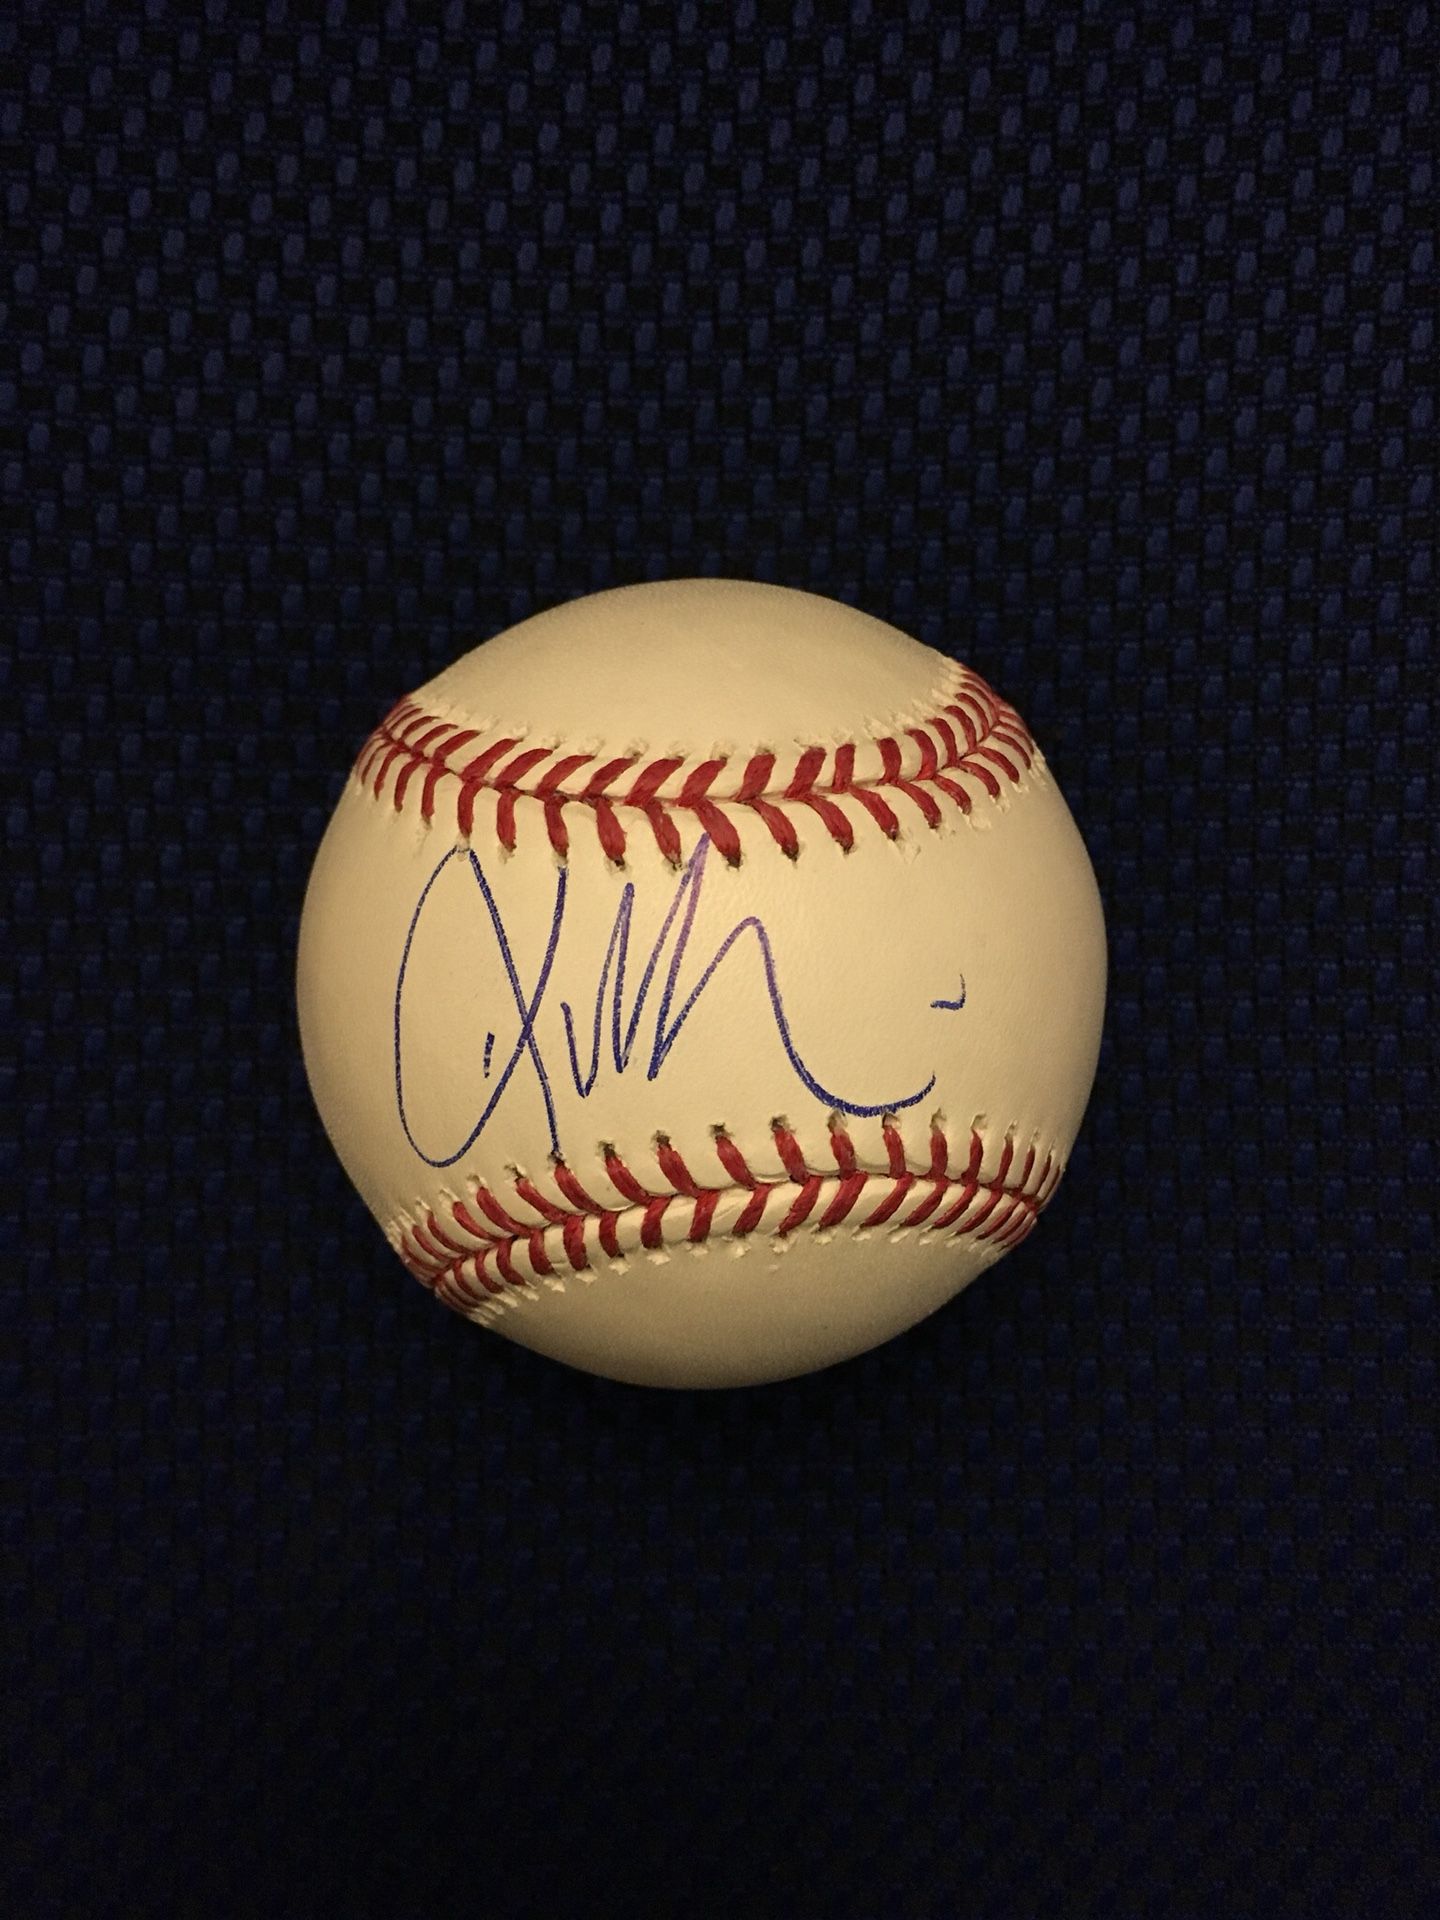 Kevin Millar Signed Baseball - MLB